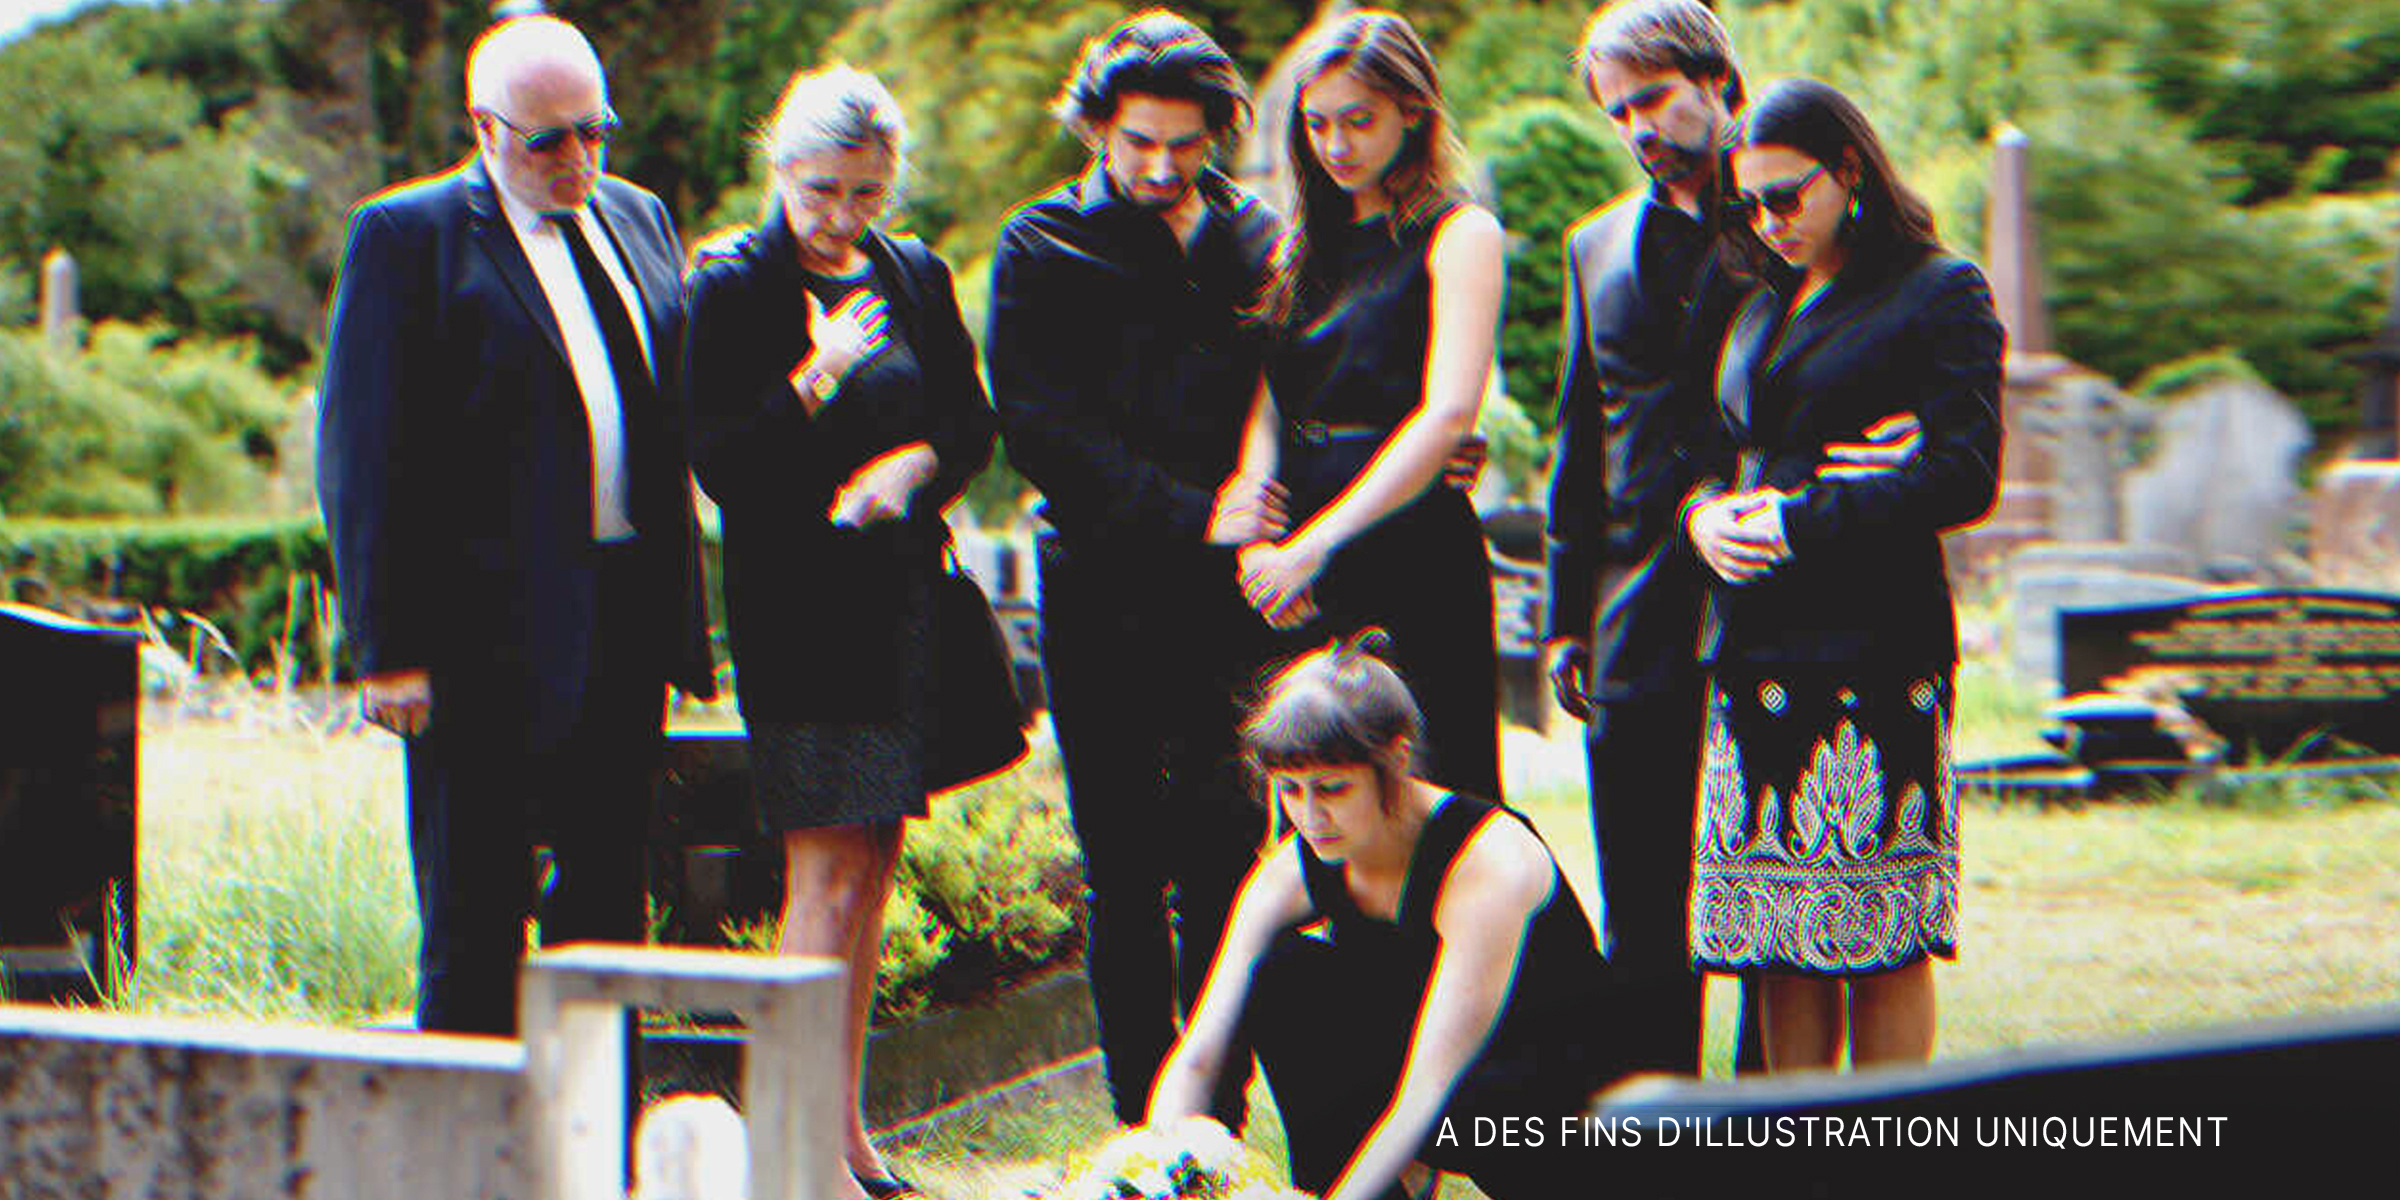 Des personnes lors d'un enterrement | Source : Shutterstock